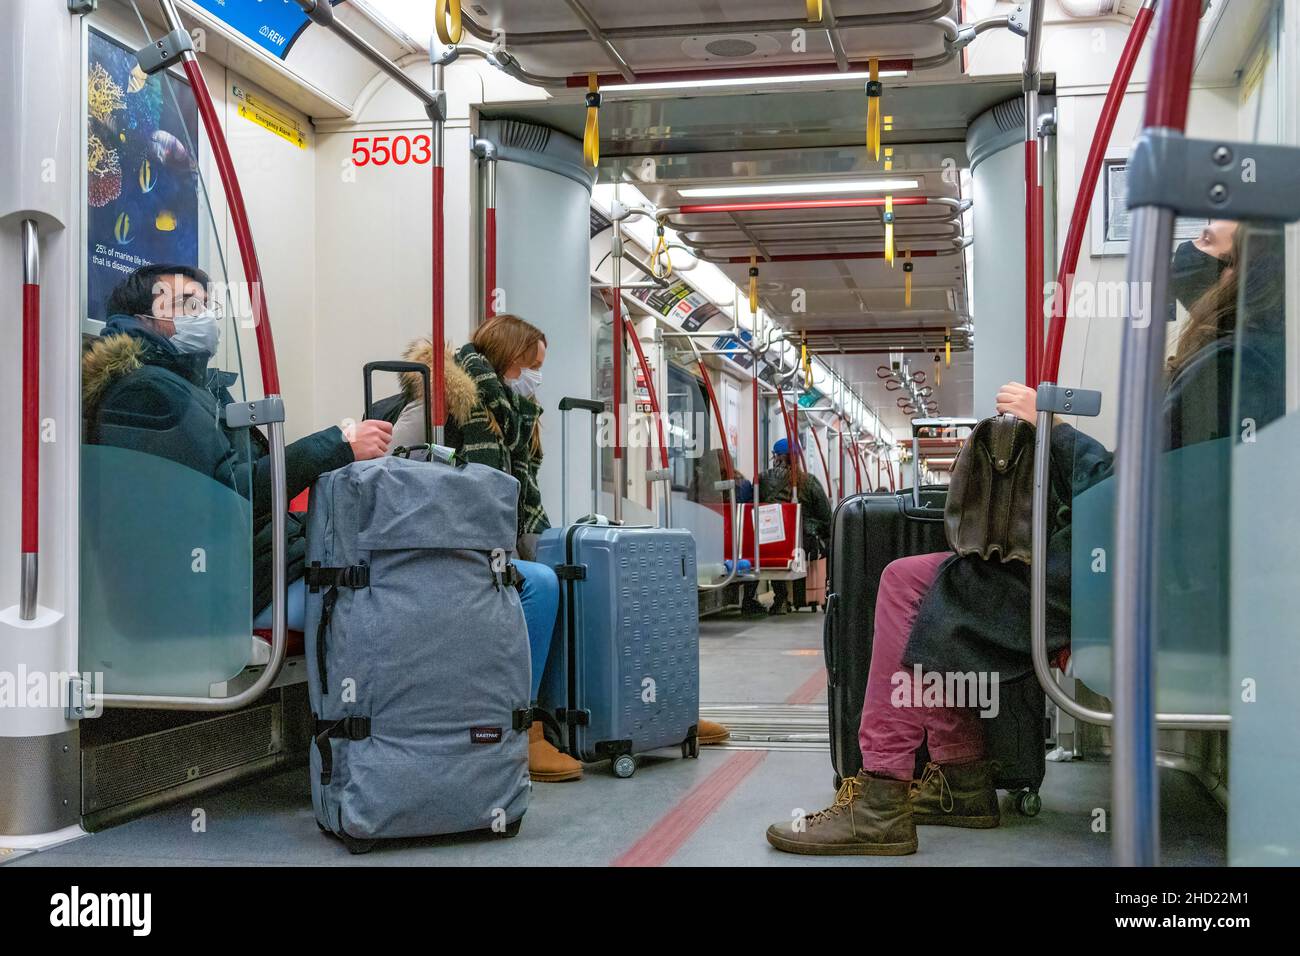 Viaggiatori con bagagli all'interno di un treno della metropolitana TTC durante la pandemia di Coronavirus. Indossano maschere protettive. 2 gennaio 2022 Foto Stock